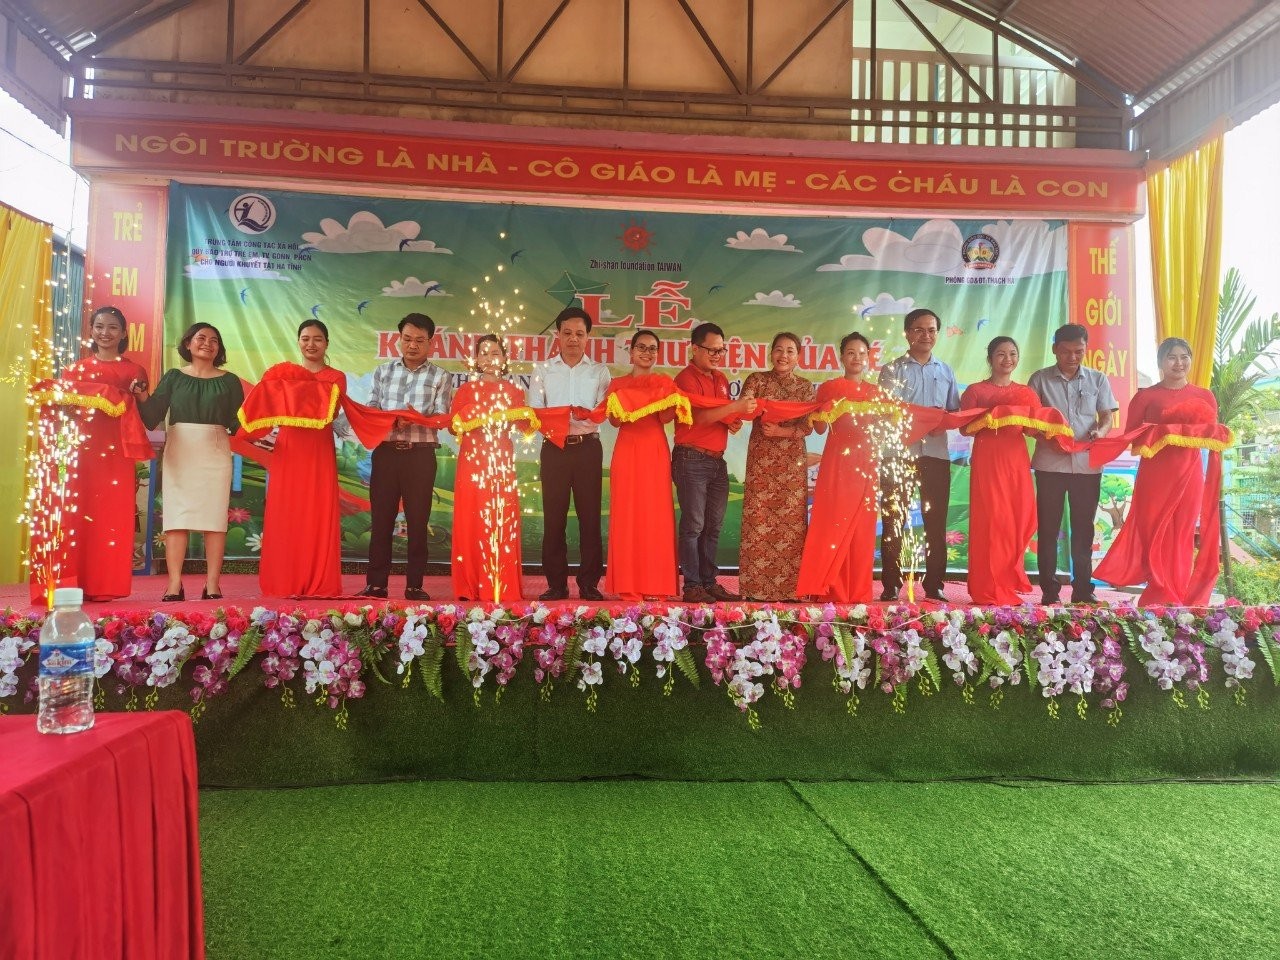 Lễ khánh thành 3 thư viện của bé trường mầm non Thạch Đài, Thạch Khê và Thạch Sơn huyện Thạch Hà, tỉnh Hà Tĩnh 